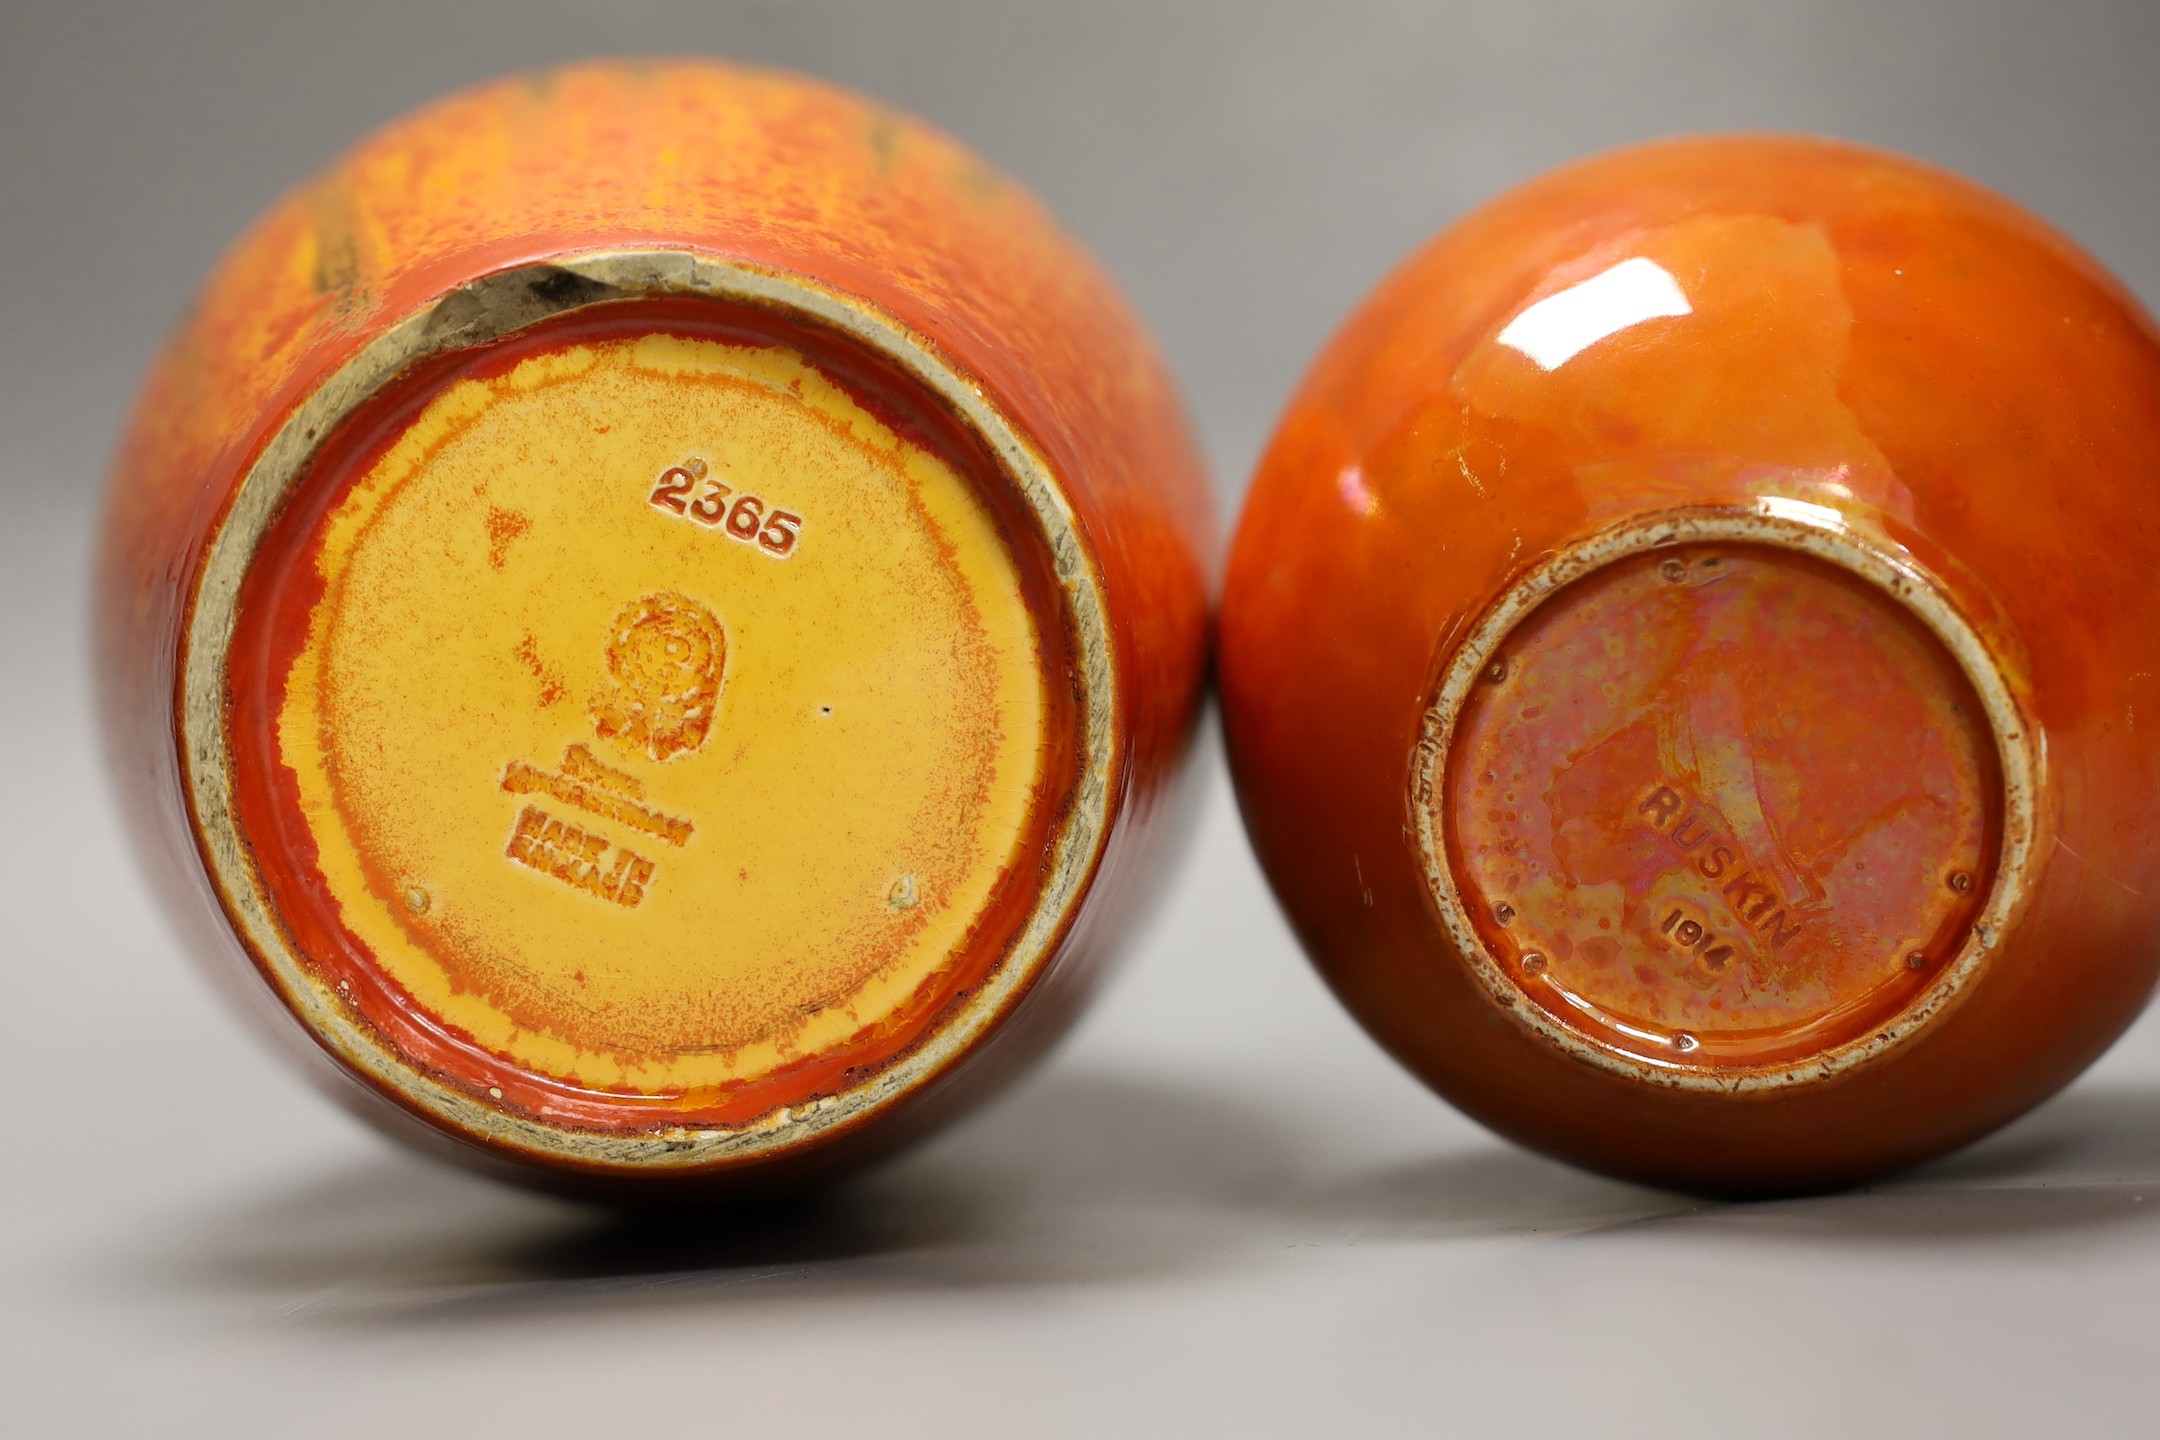 A Pilkington‘s Royal Lancastrian mottled orange ground vase and a Ruskin Orange lustre jar and - Image 4 of 4